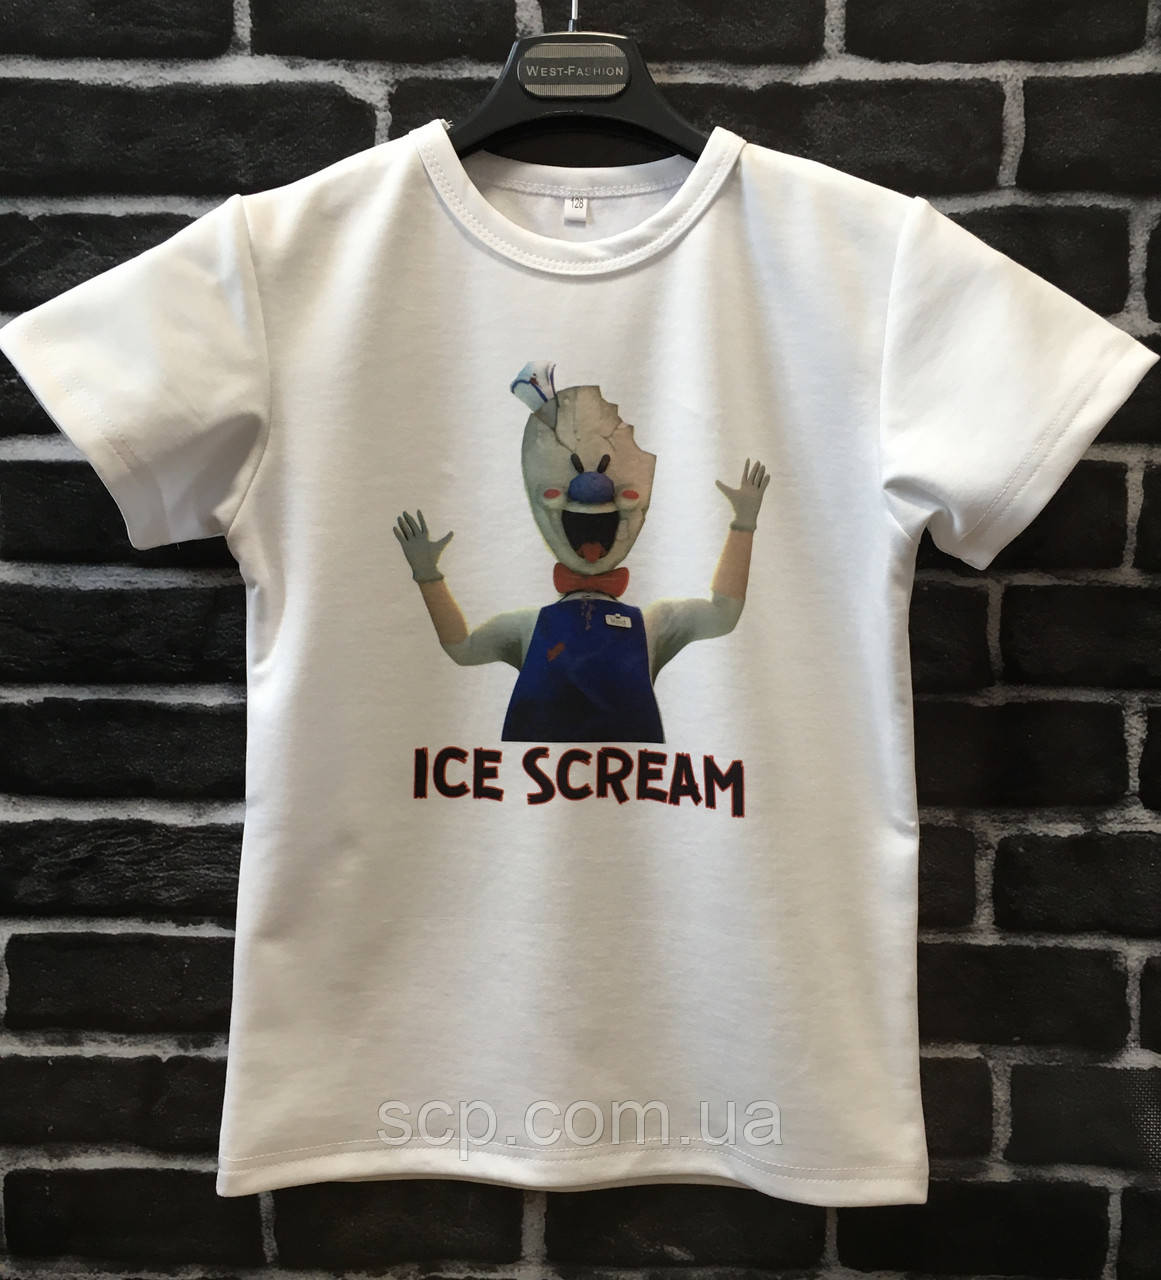 Футболка Ice Scream